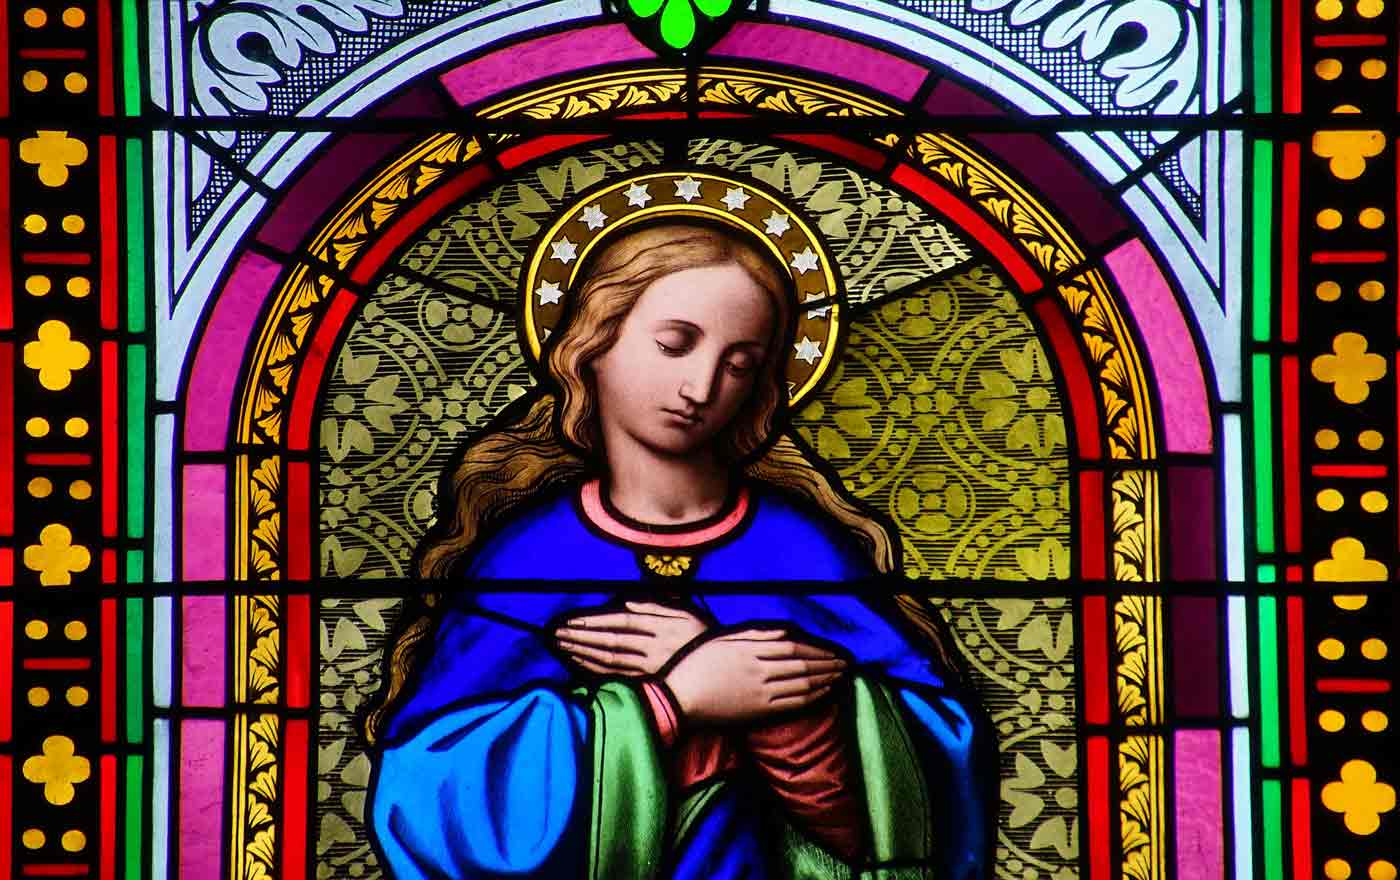 "Dass Maria Magdalena heute eine eher untergeordnete Rolle spielt, verdankt sie Männern. Männern, die schon bald alles daran setzten, Frauen aus kirchlichen Leitungsrollen zu drängen." Foto: pixabay